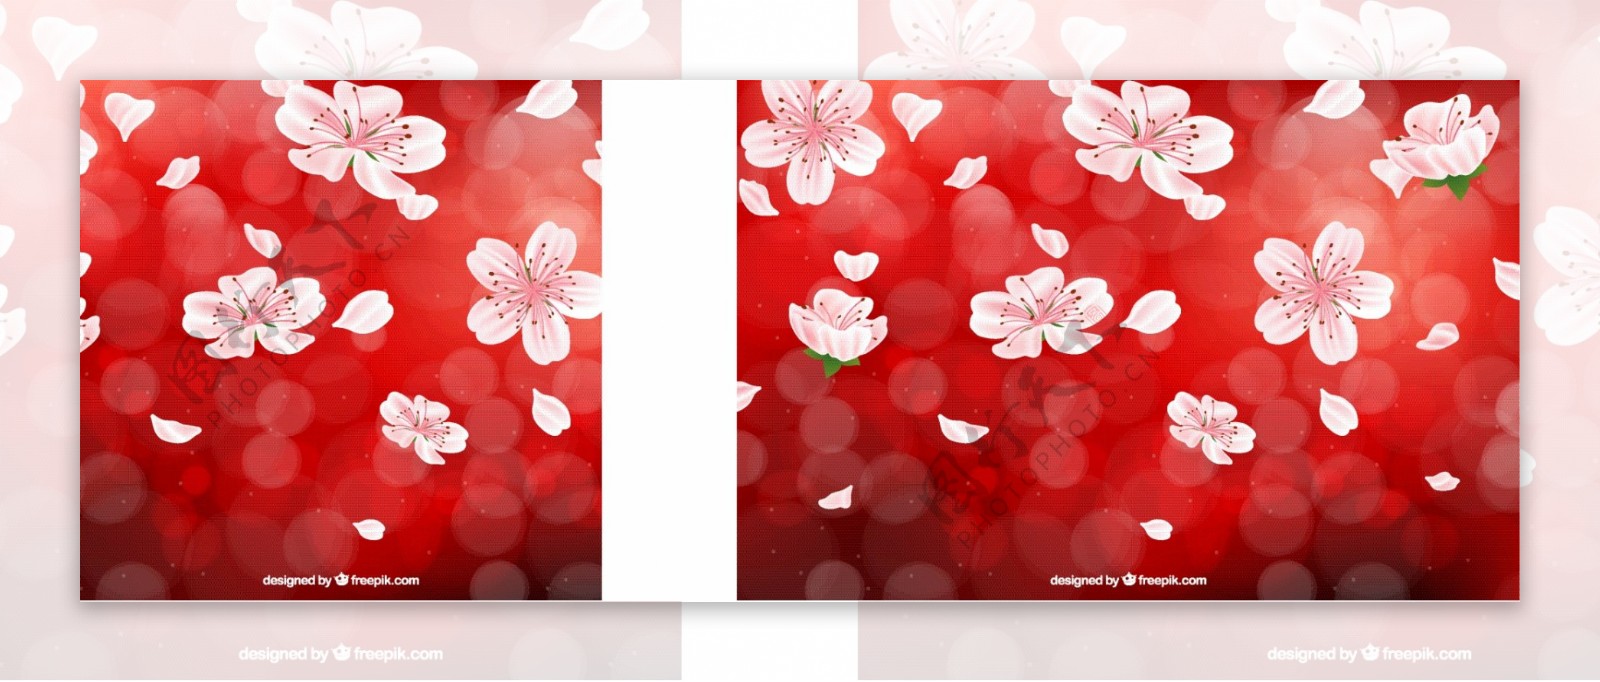 红色背景的樱花和背景虚化效果